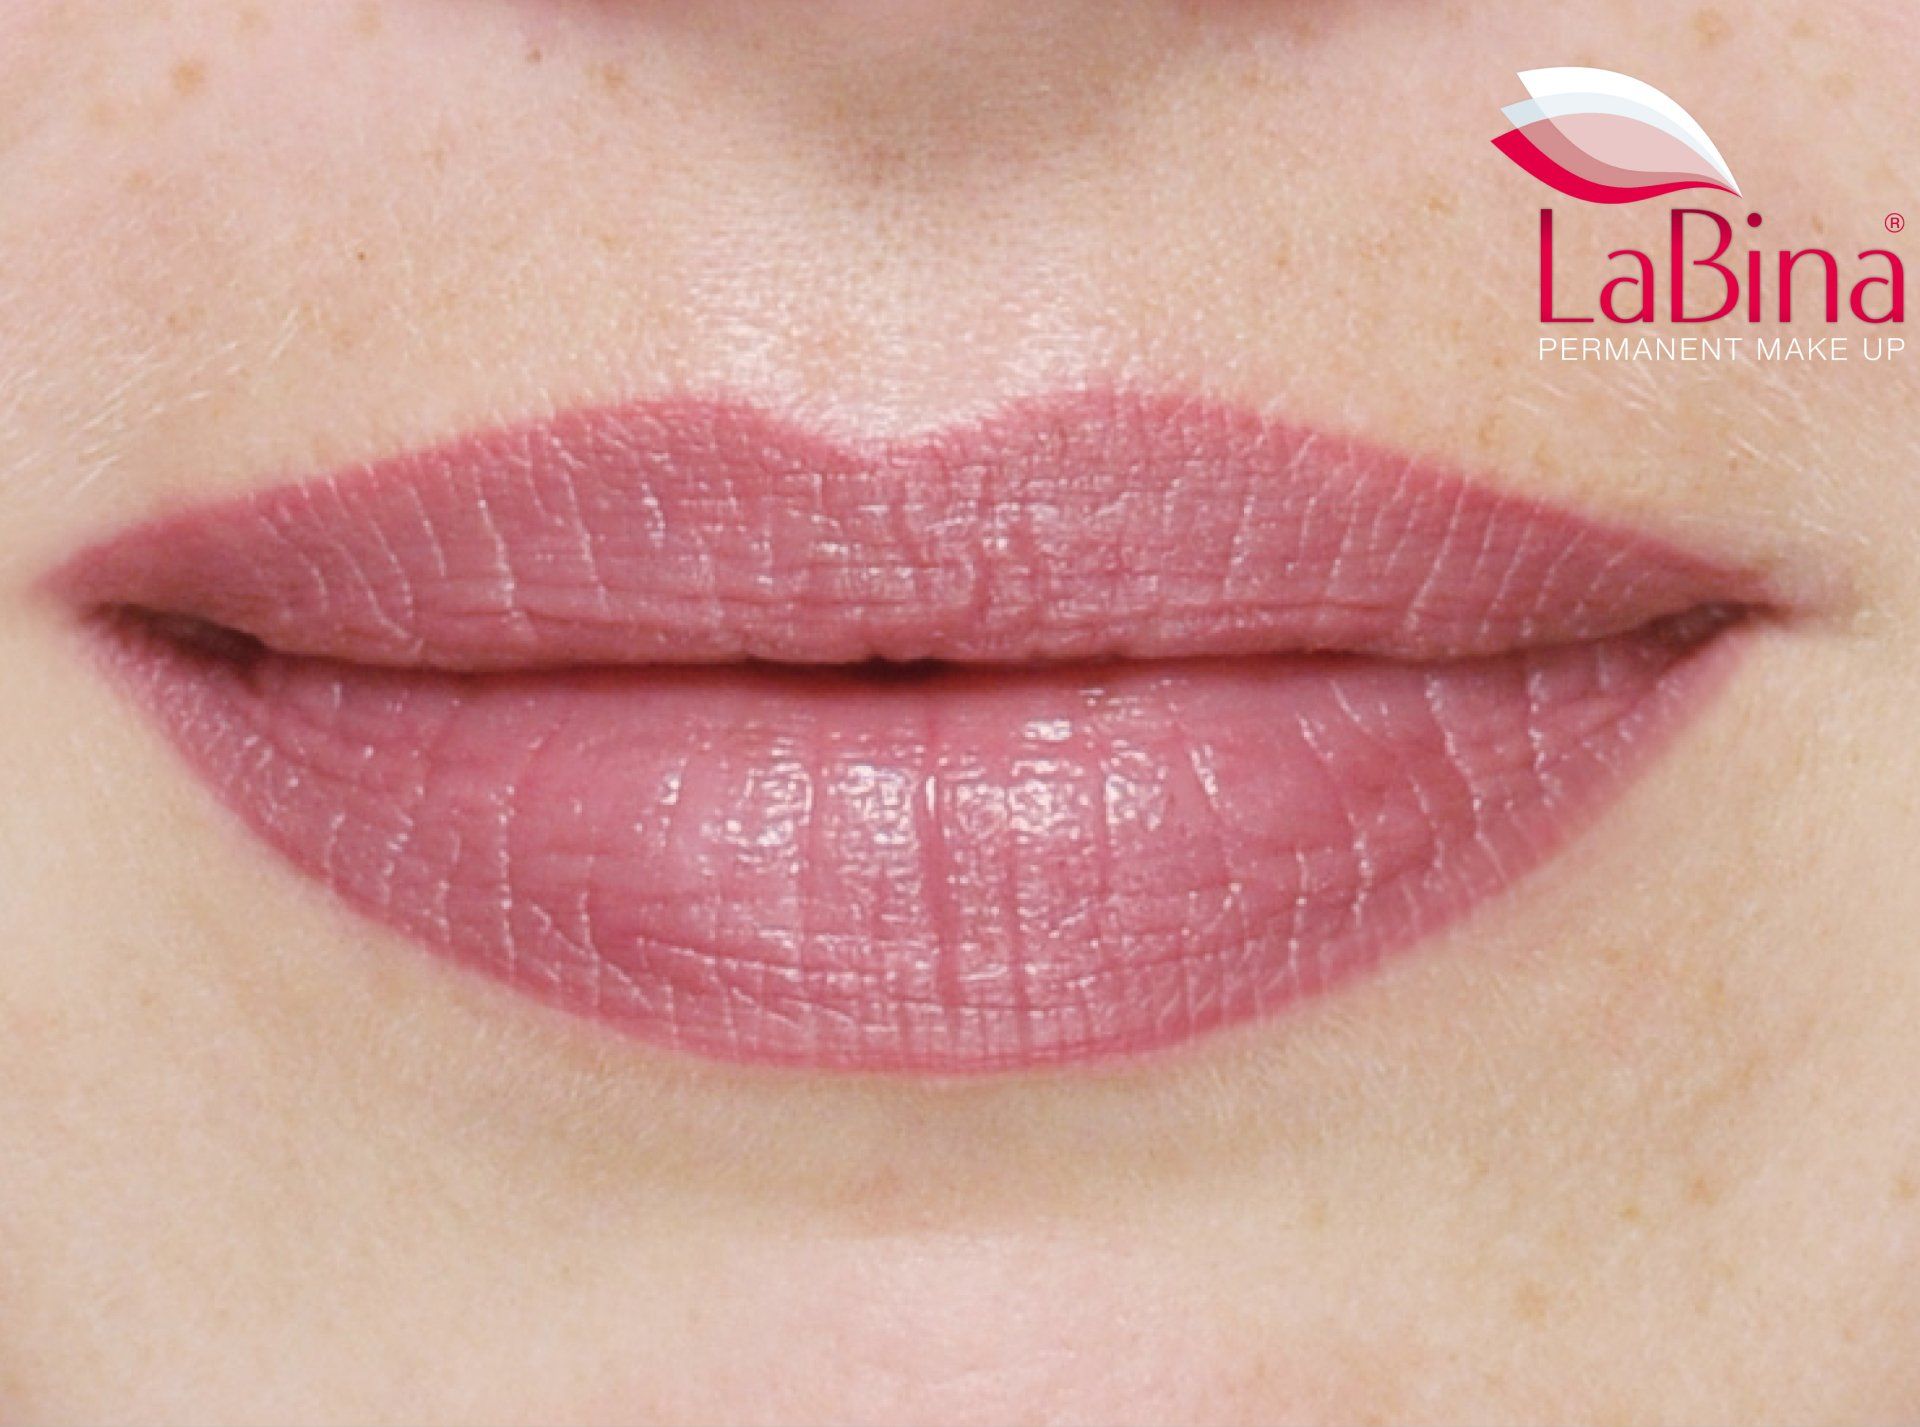 Permanent Make-up - Lippen-Vollschattierung für volle und definierte Lippen mit intensiver Farbauffüllung